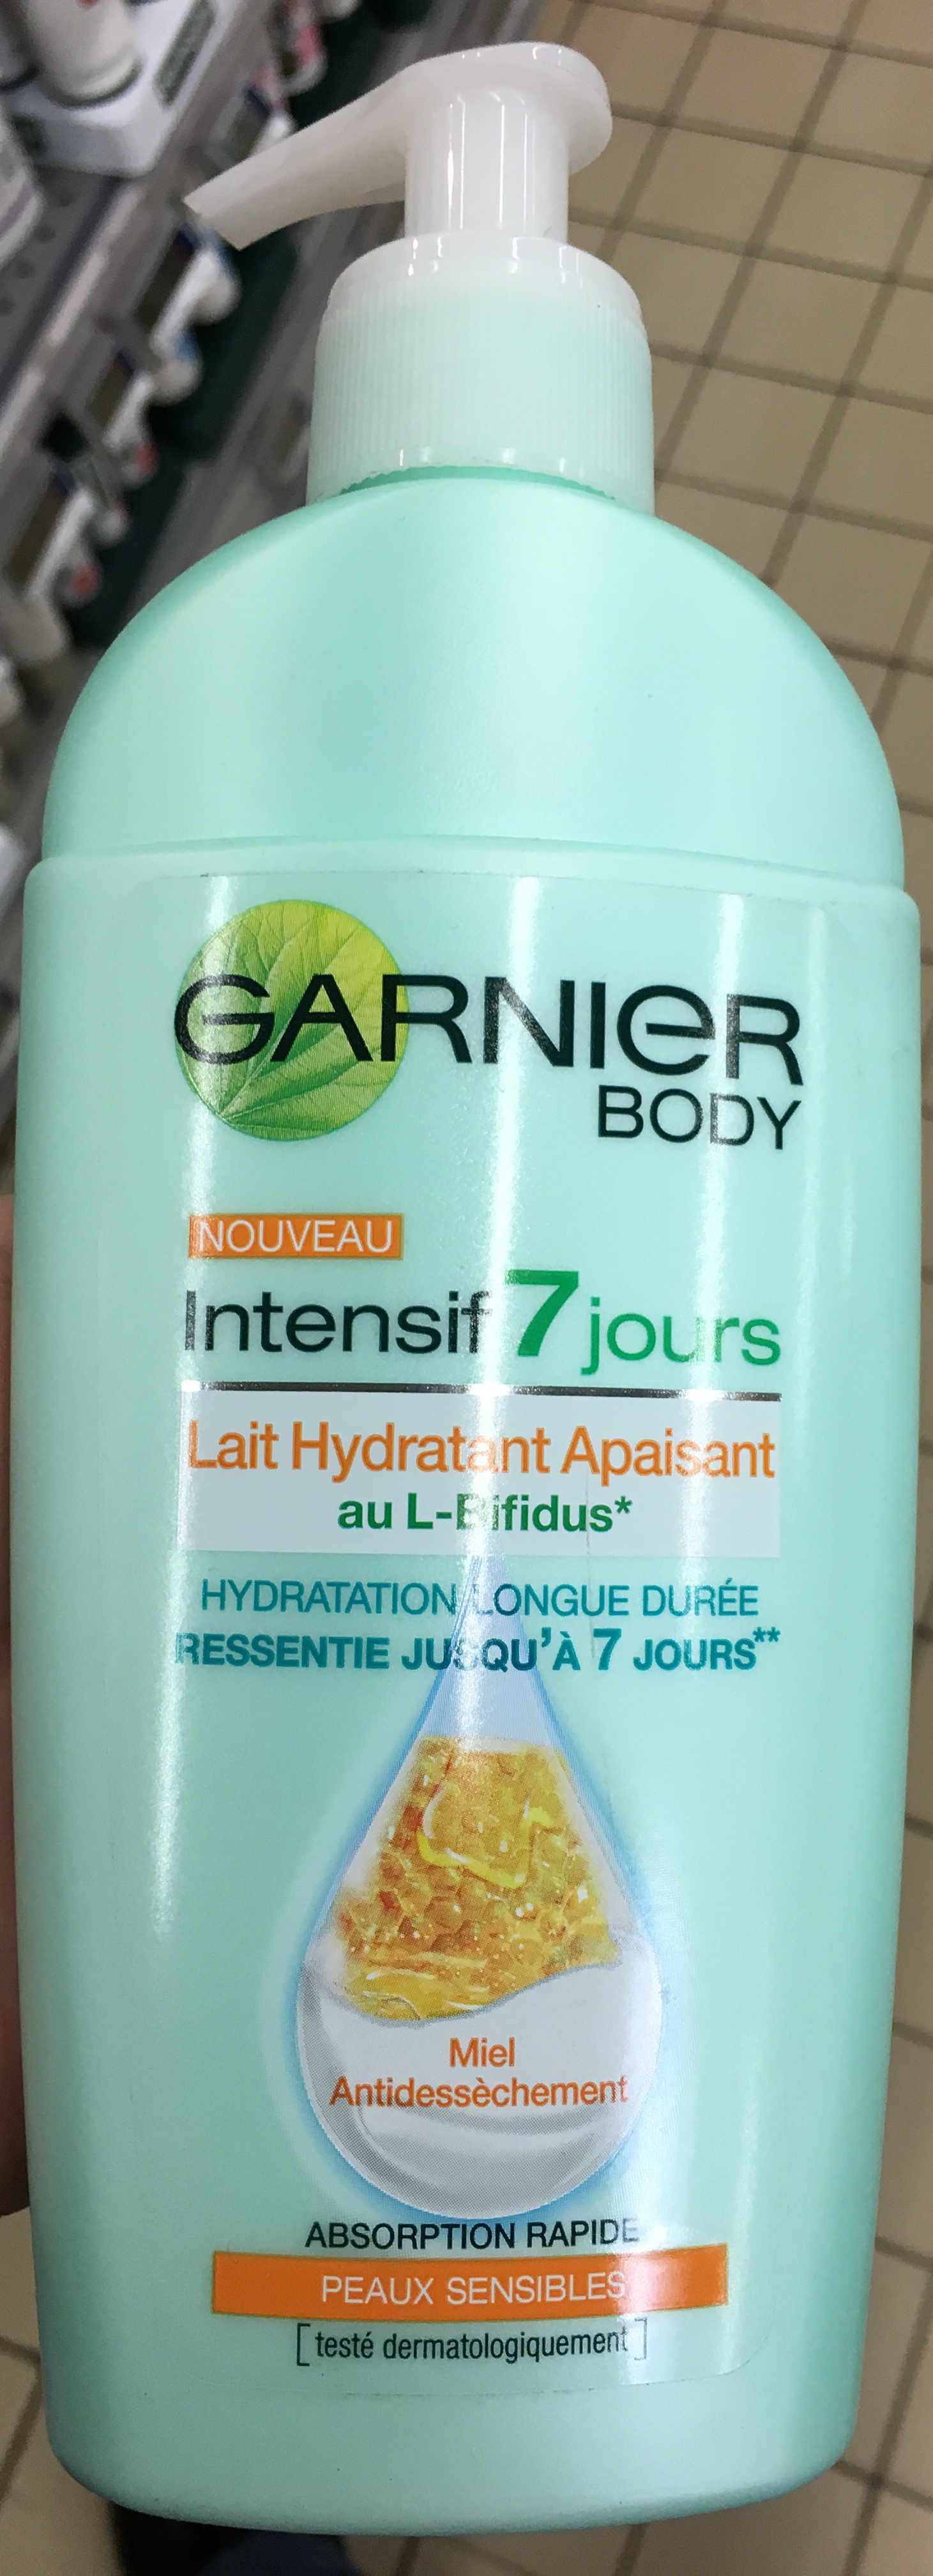 Intensif 7 jours Lait Hydratant Apaisant au L-Bifidus - Product - fr